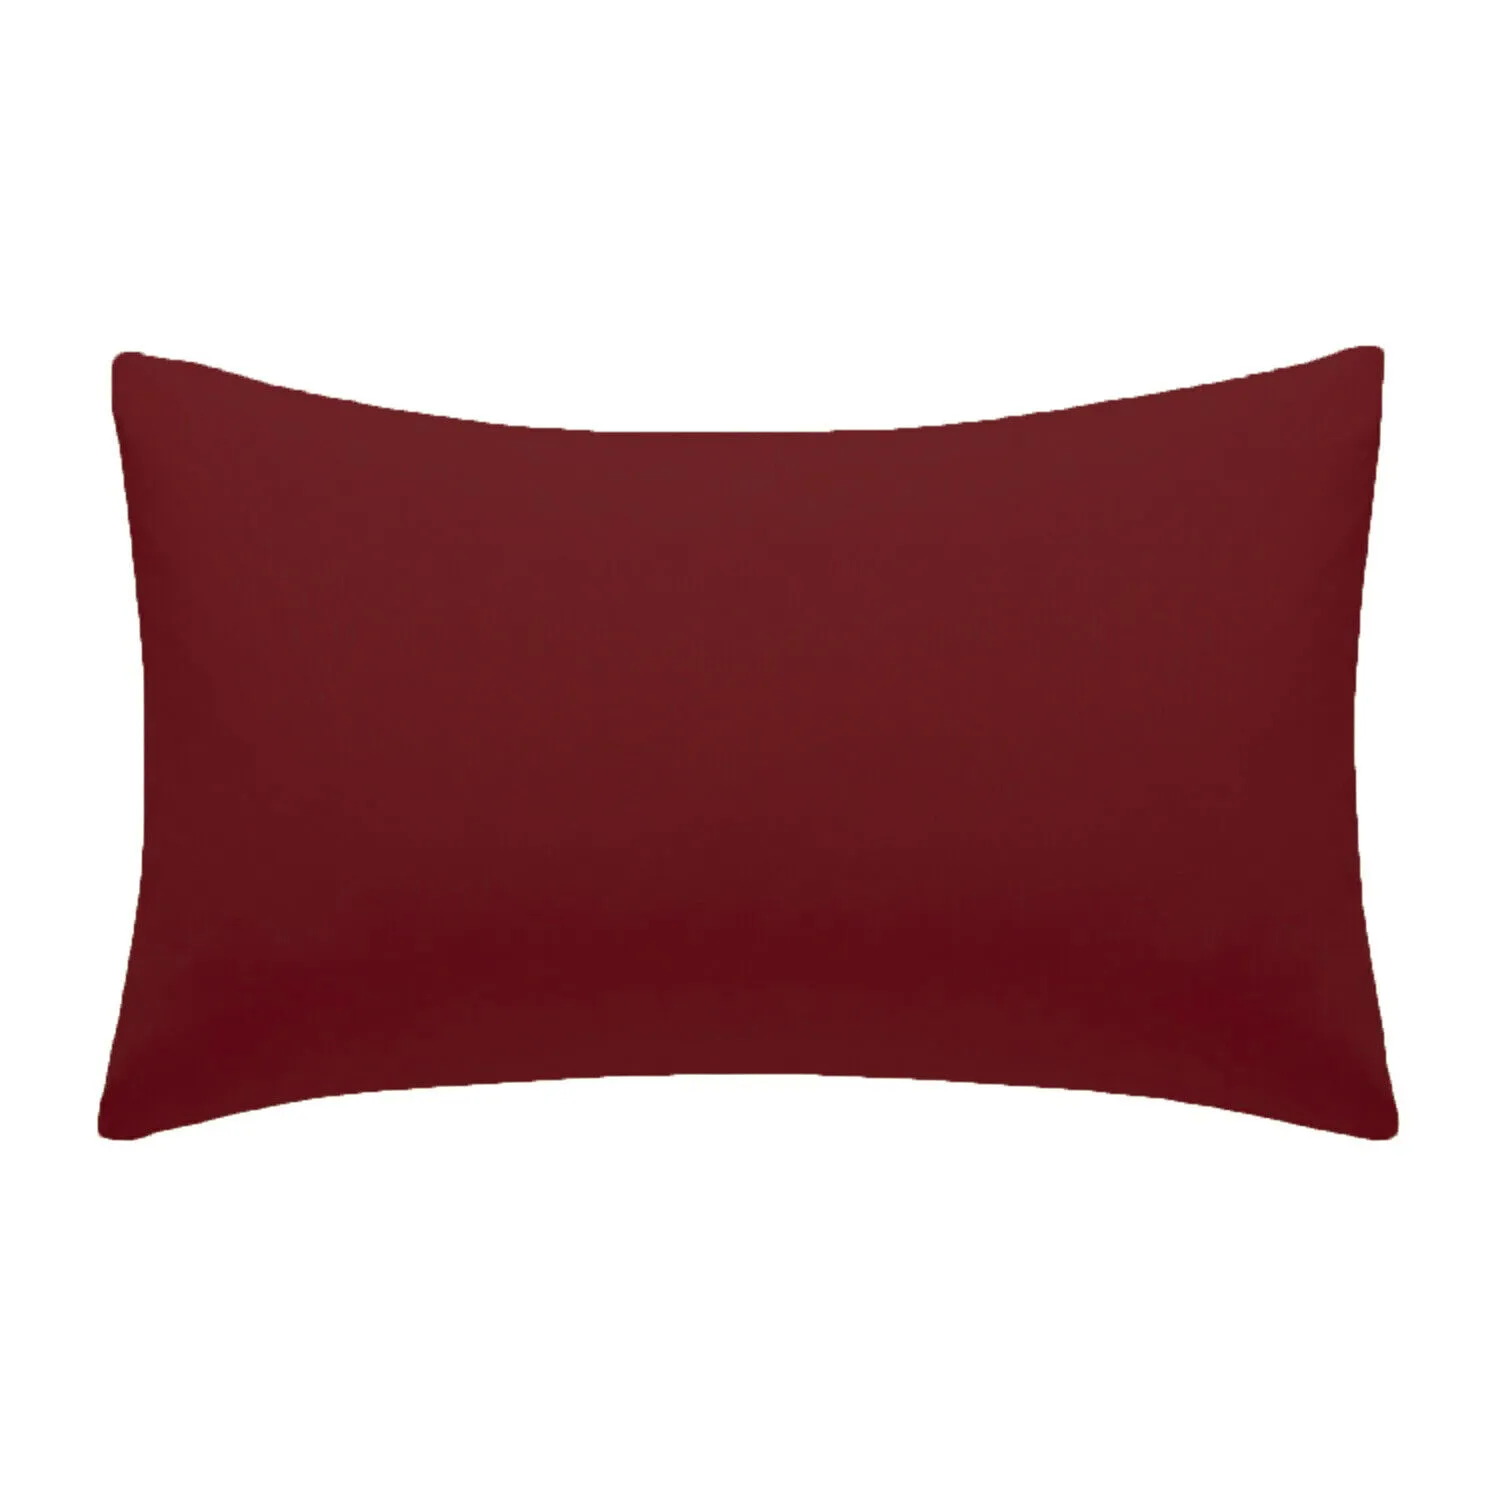 Recién llegado, funda de almohada decorativa, funda de cojín para asiento de coche, funda de almohada de Color personalizado Simple de alta calidad para sofá sólido